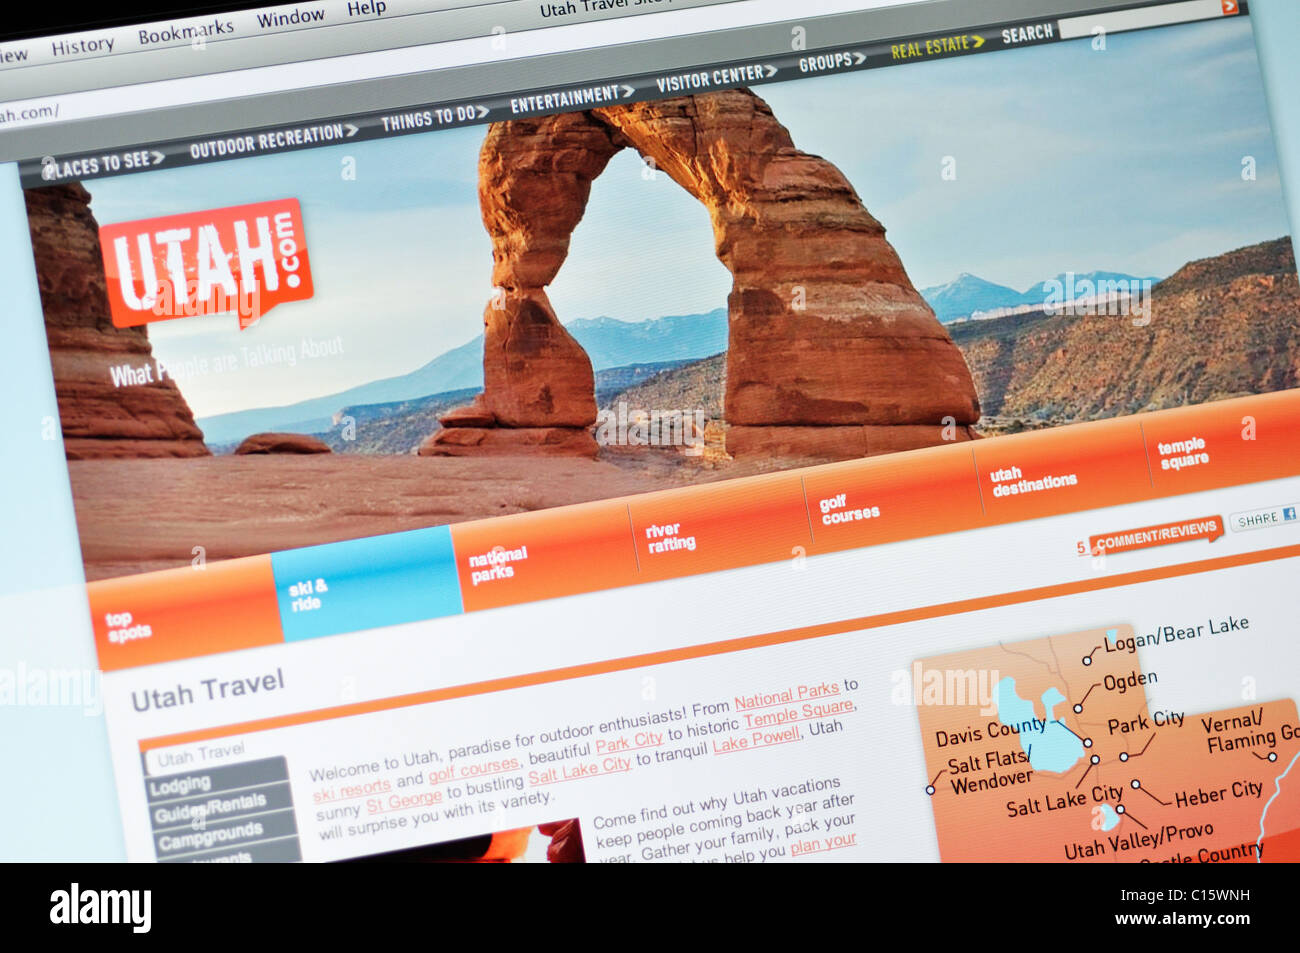 Utah stato ufficiale sito sul turismo Foto Stock